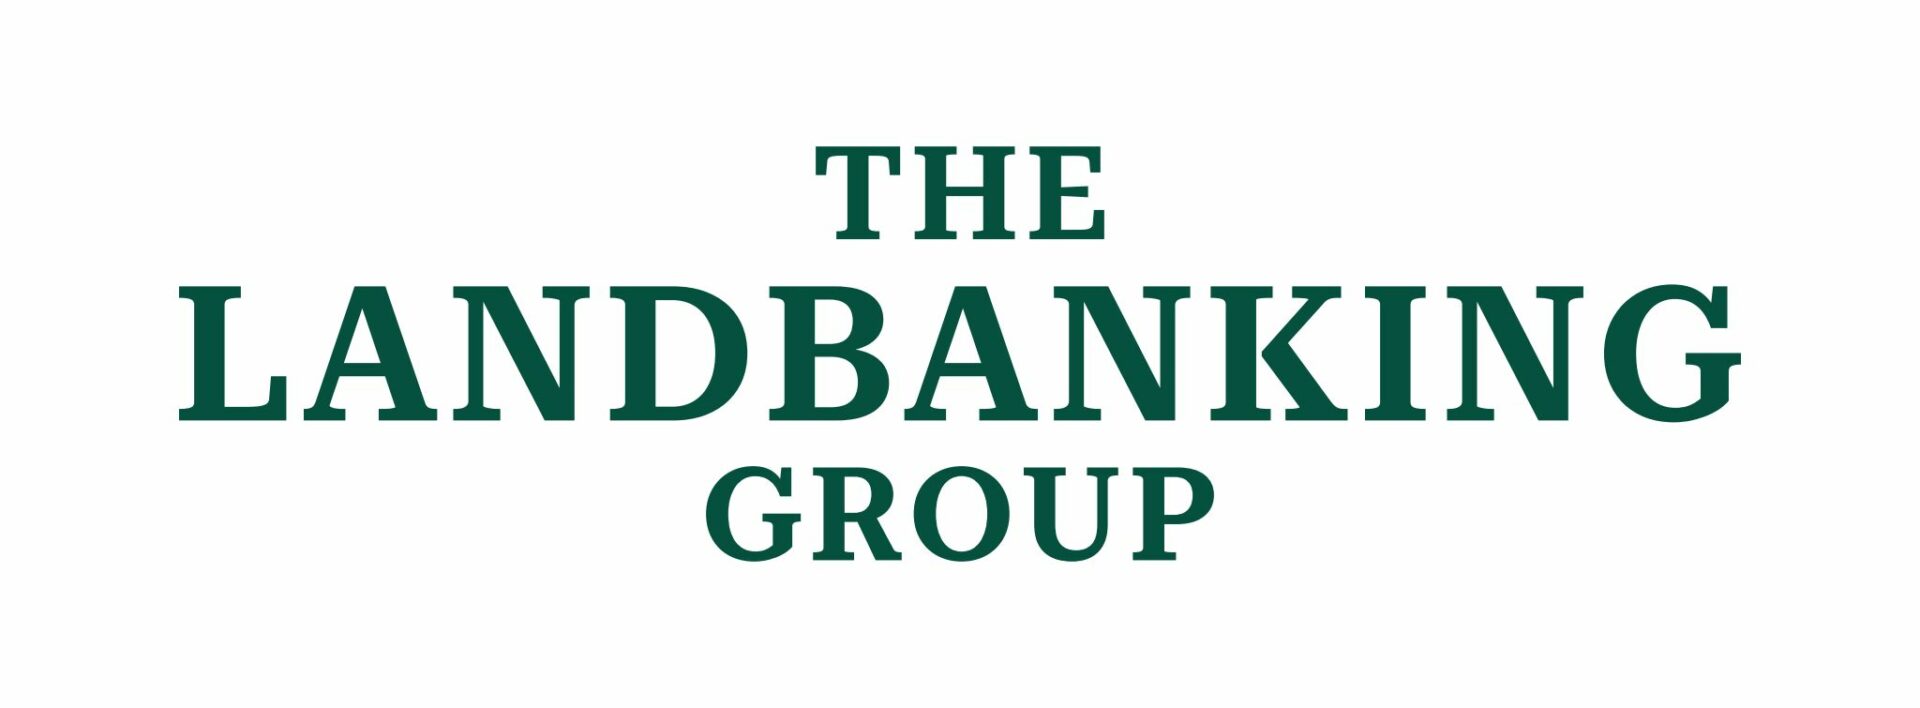 The Landbanking Group Logo